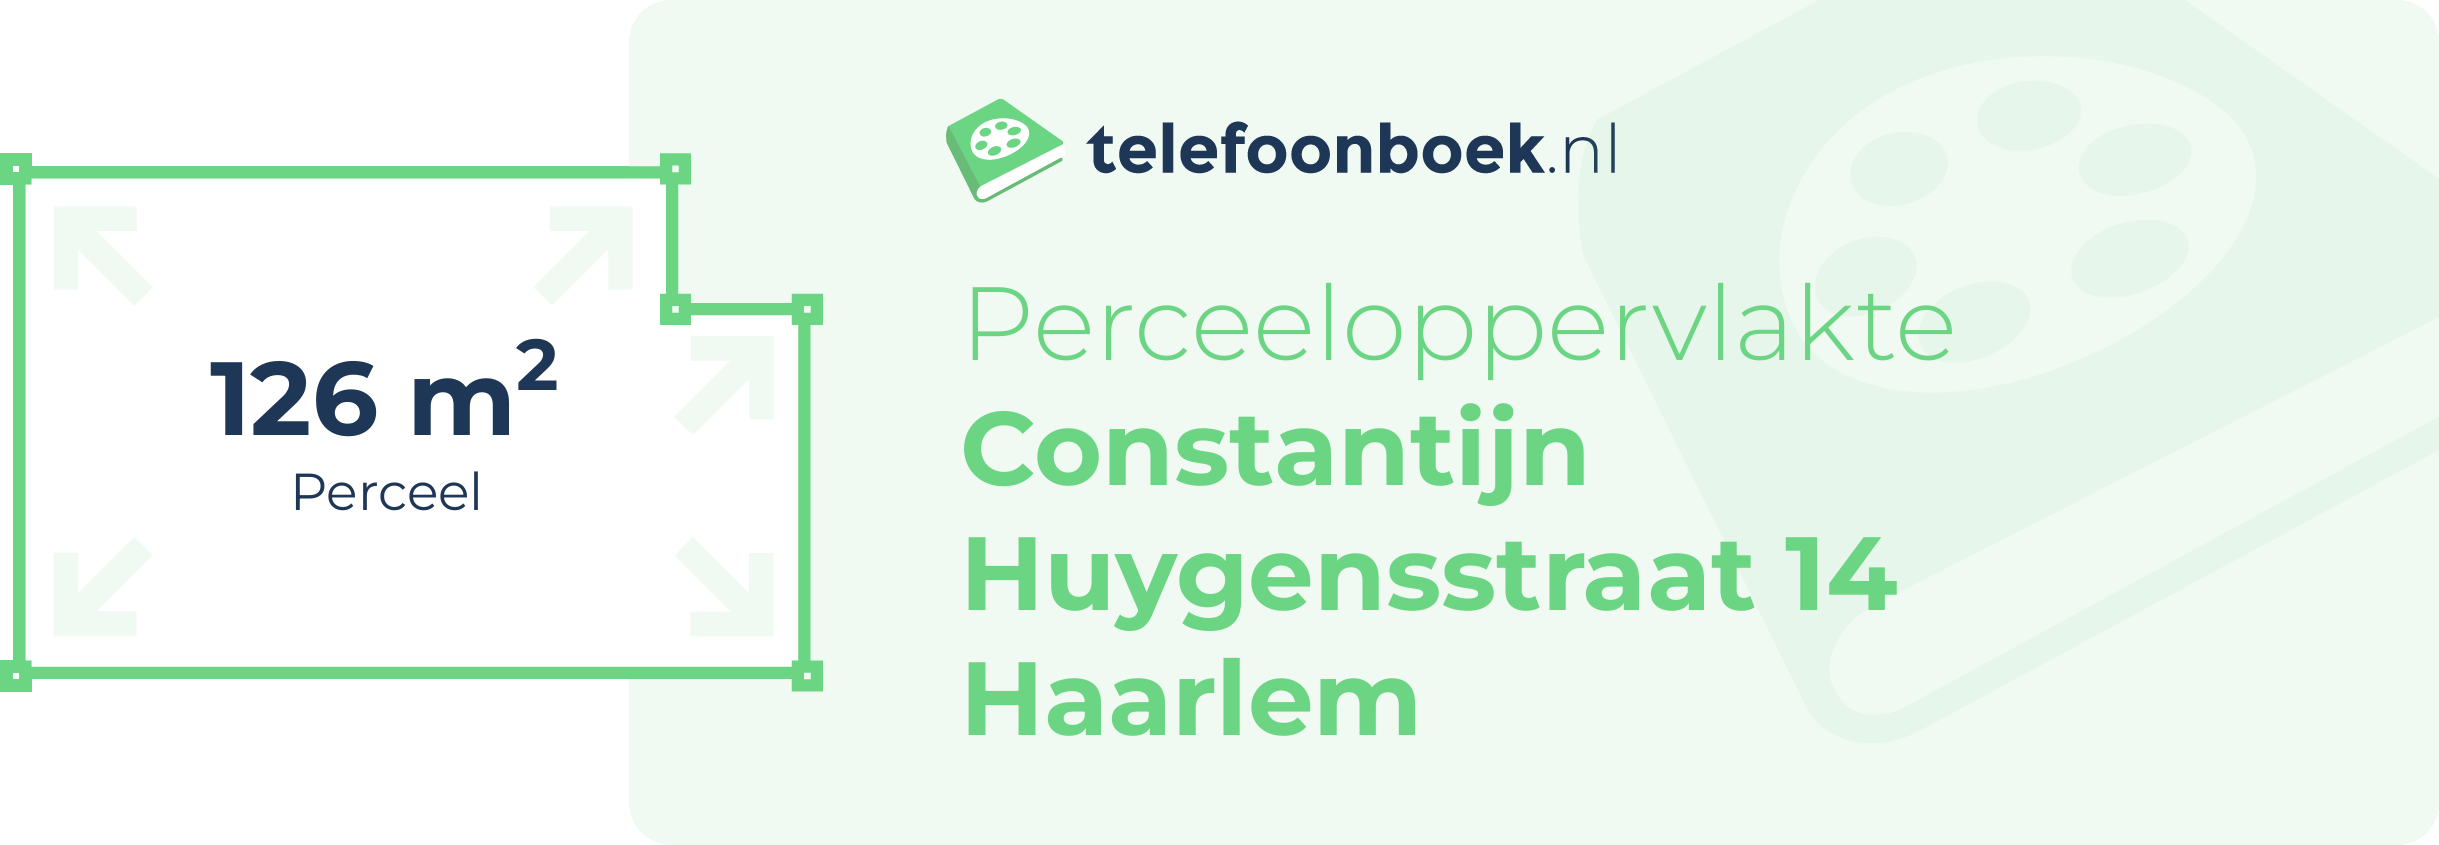 Perceeloppervlakte Constantijn Huygensstraat 14 Haarlem